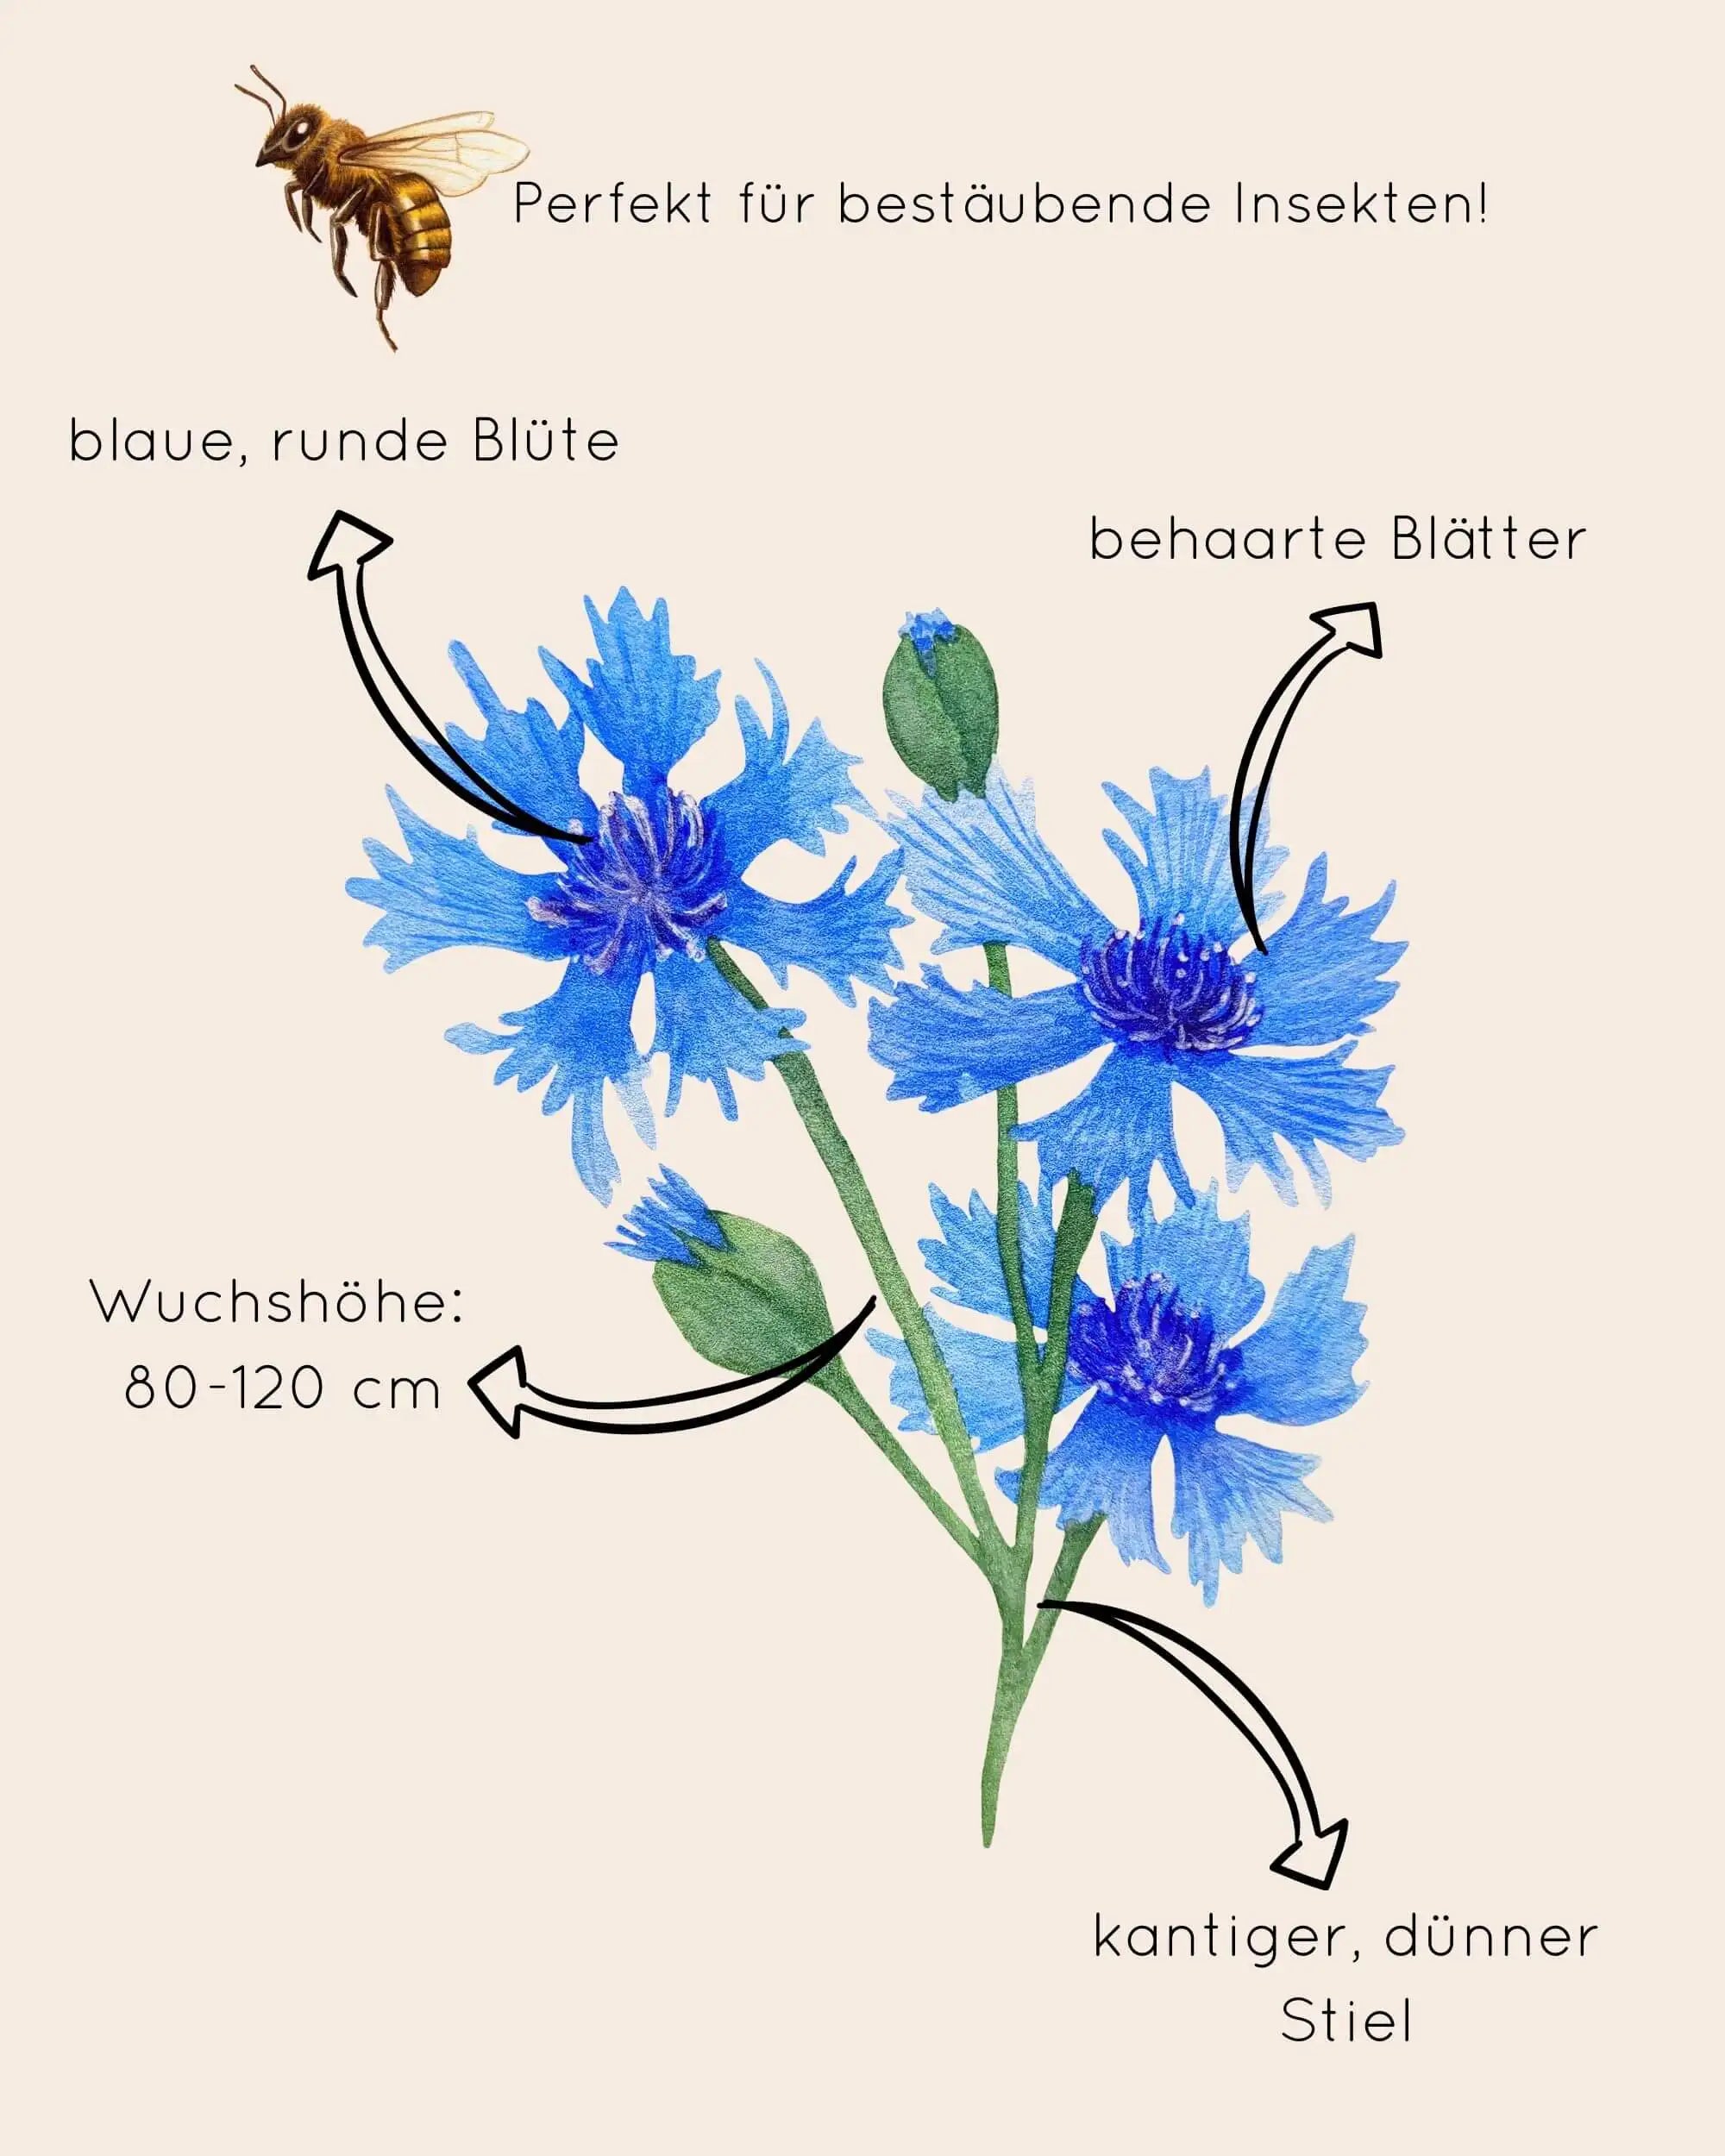 Zeichnung von blauer Kornblume zur Beschreibung ihres Aussehens